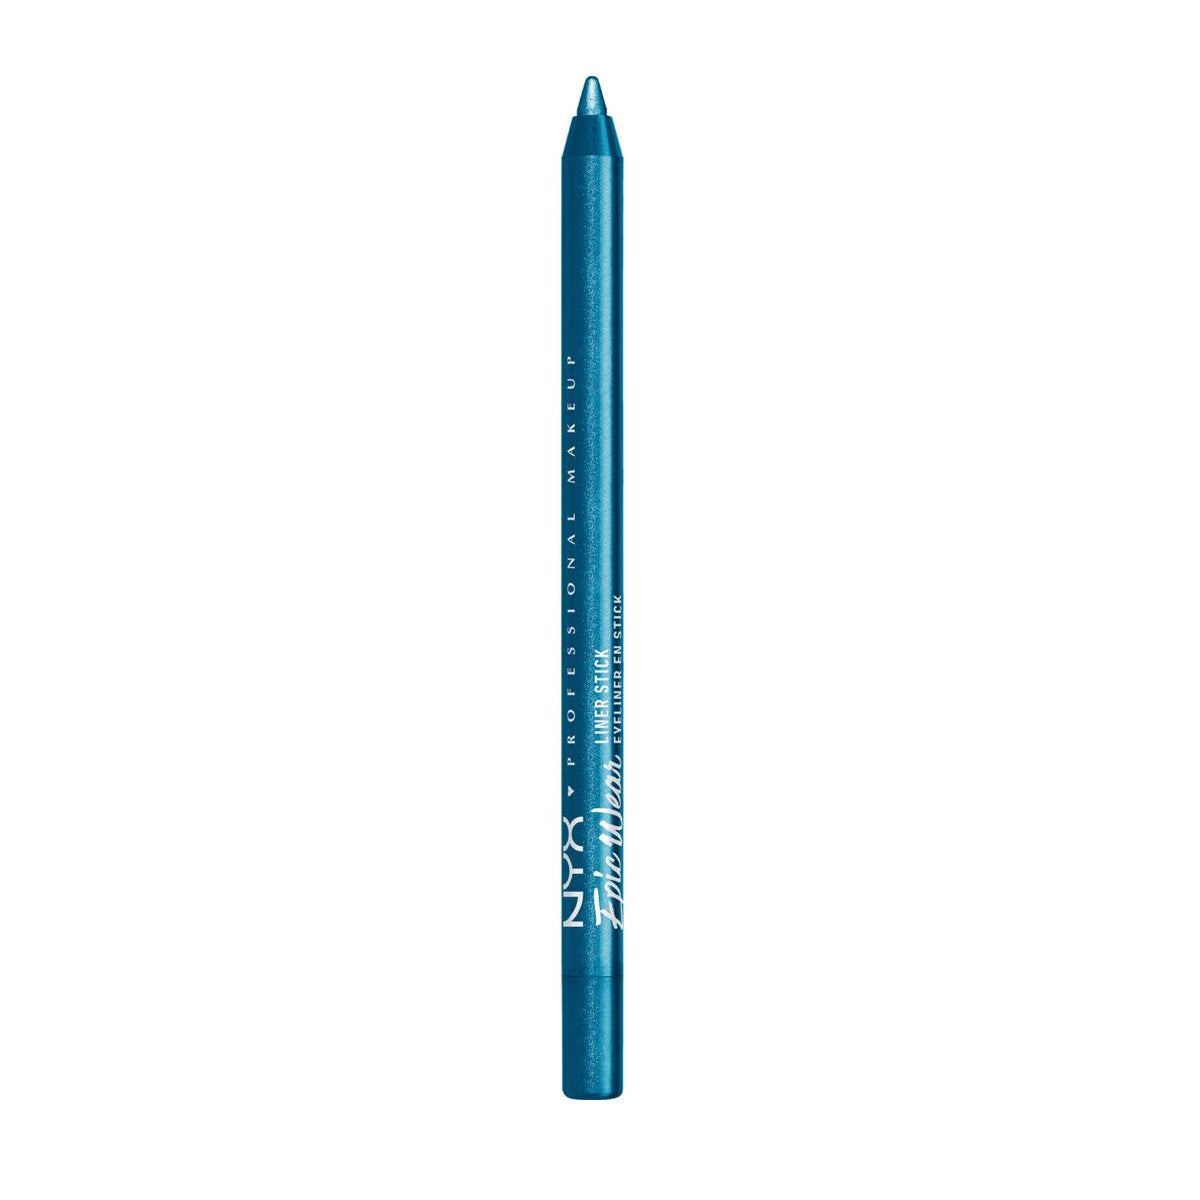 Crayon pour les yeux NYX Epic Wear turquoise tempête (1,22 g)